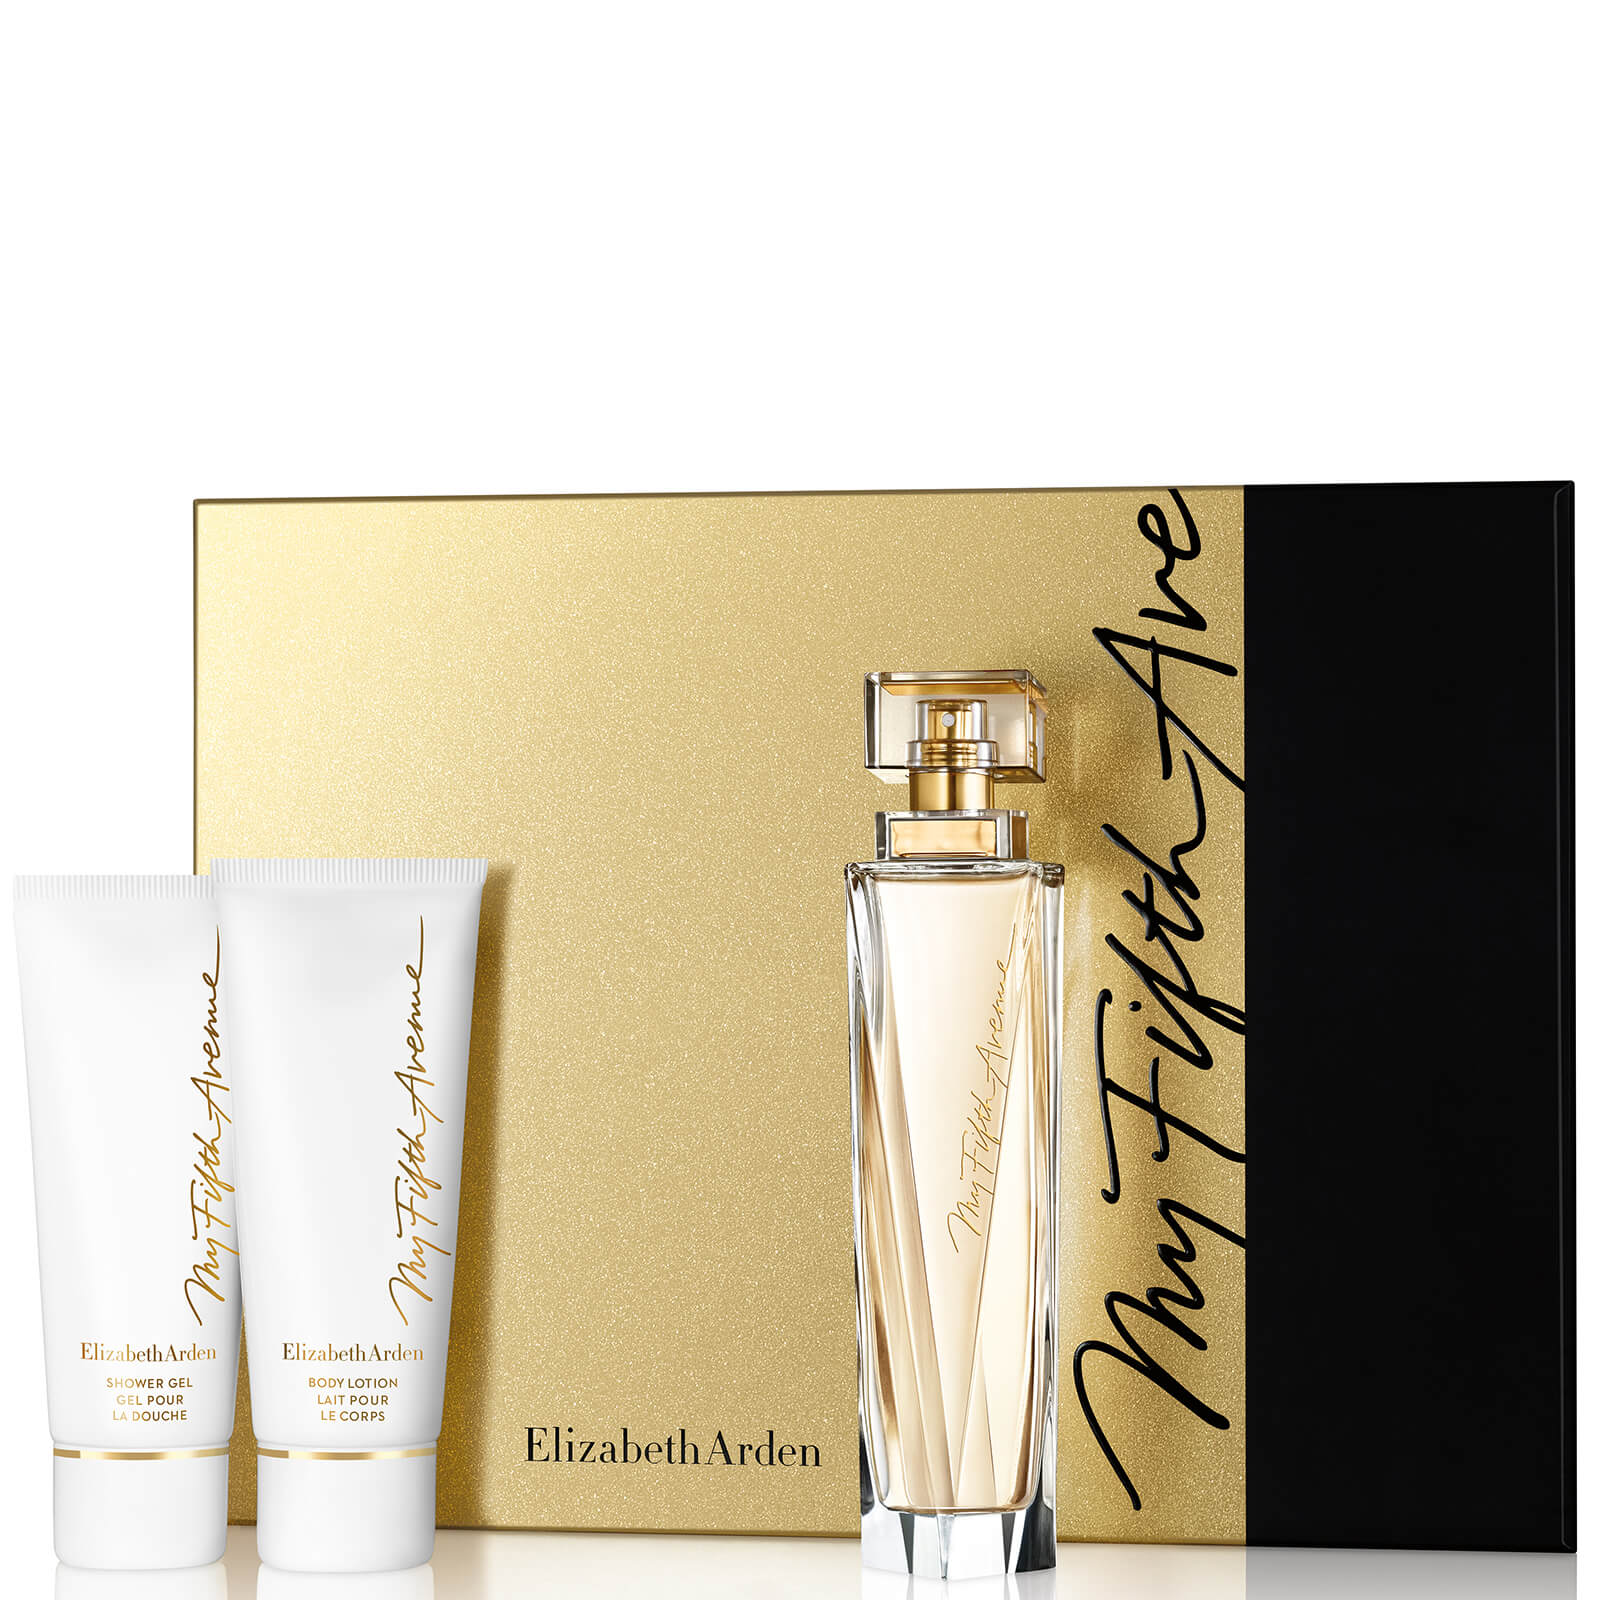 Elizabeth Arden My Fifth Avenue 100ml Eau de Parfum Set